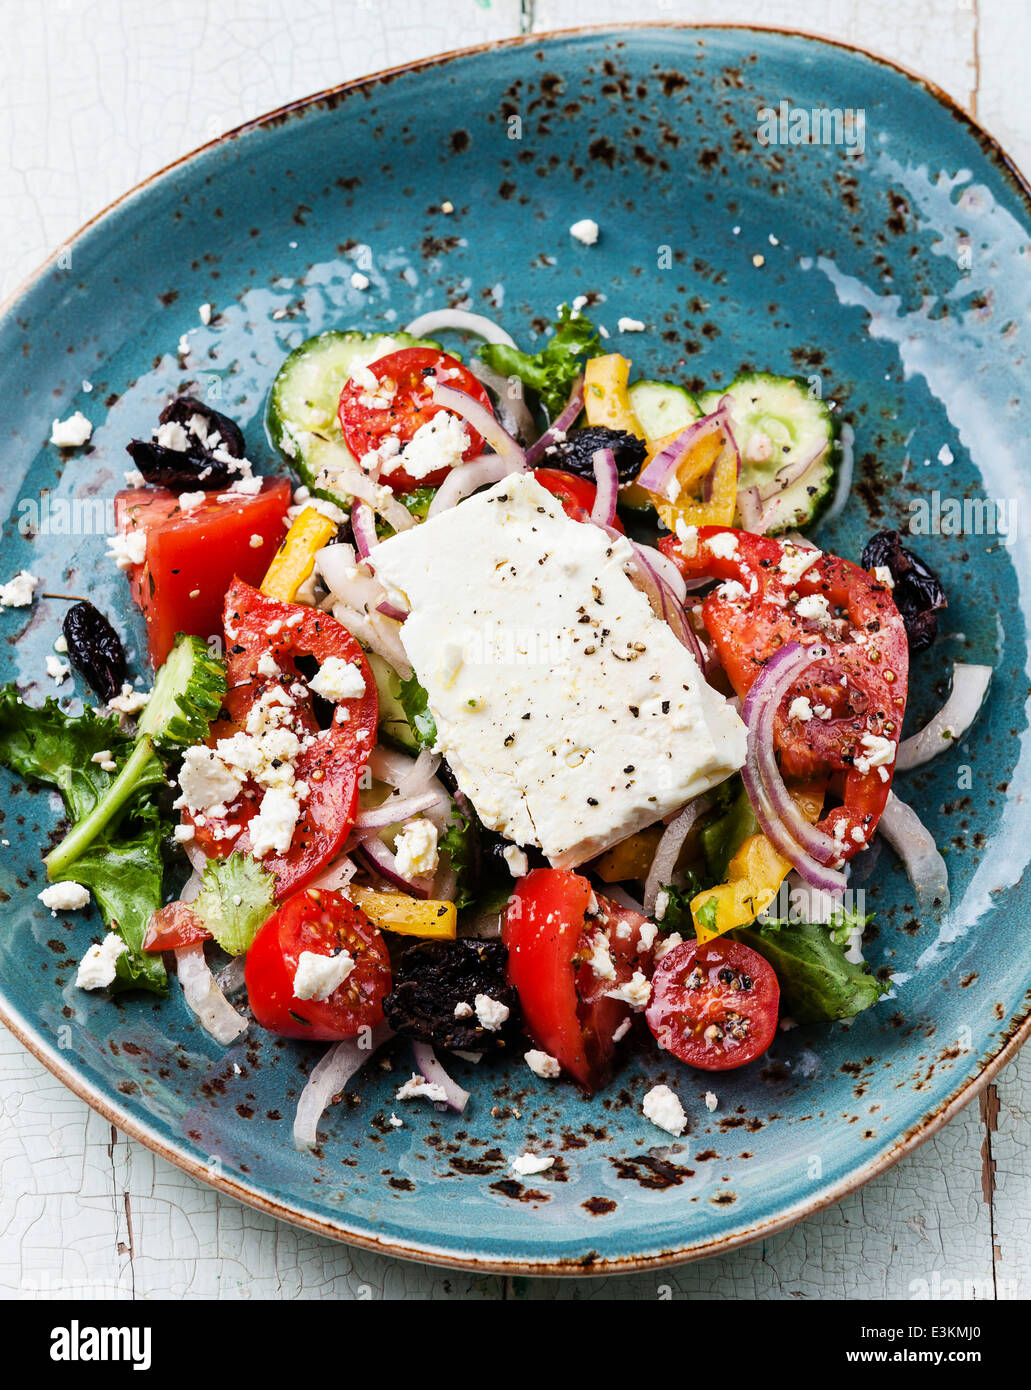 Salade grecque avec feta et olives séchées au soleil sur fond bleu Banque D'Images